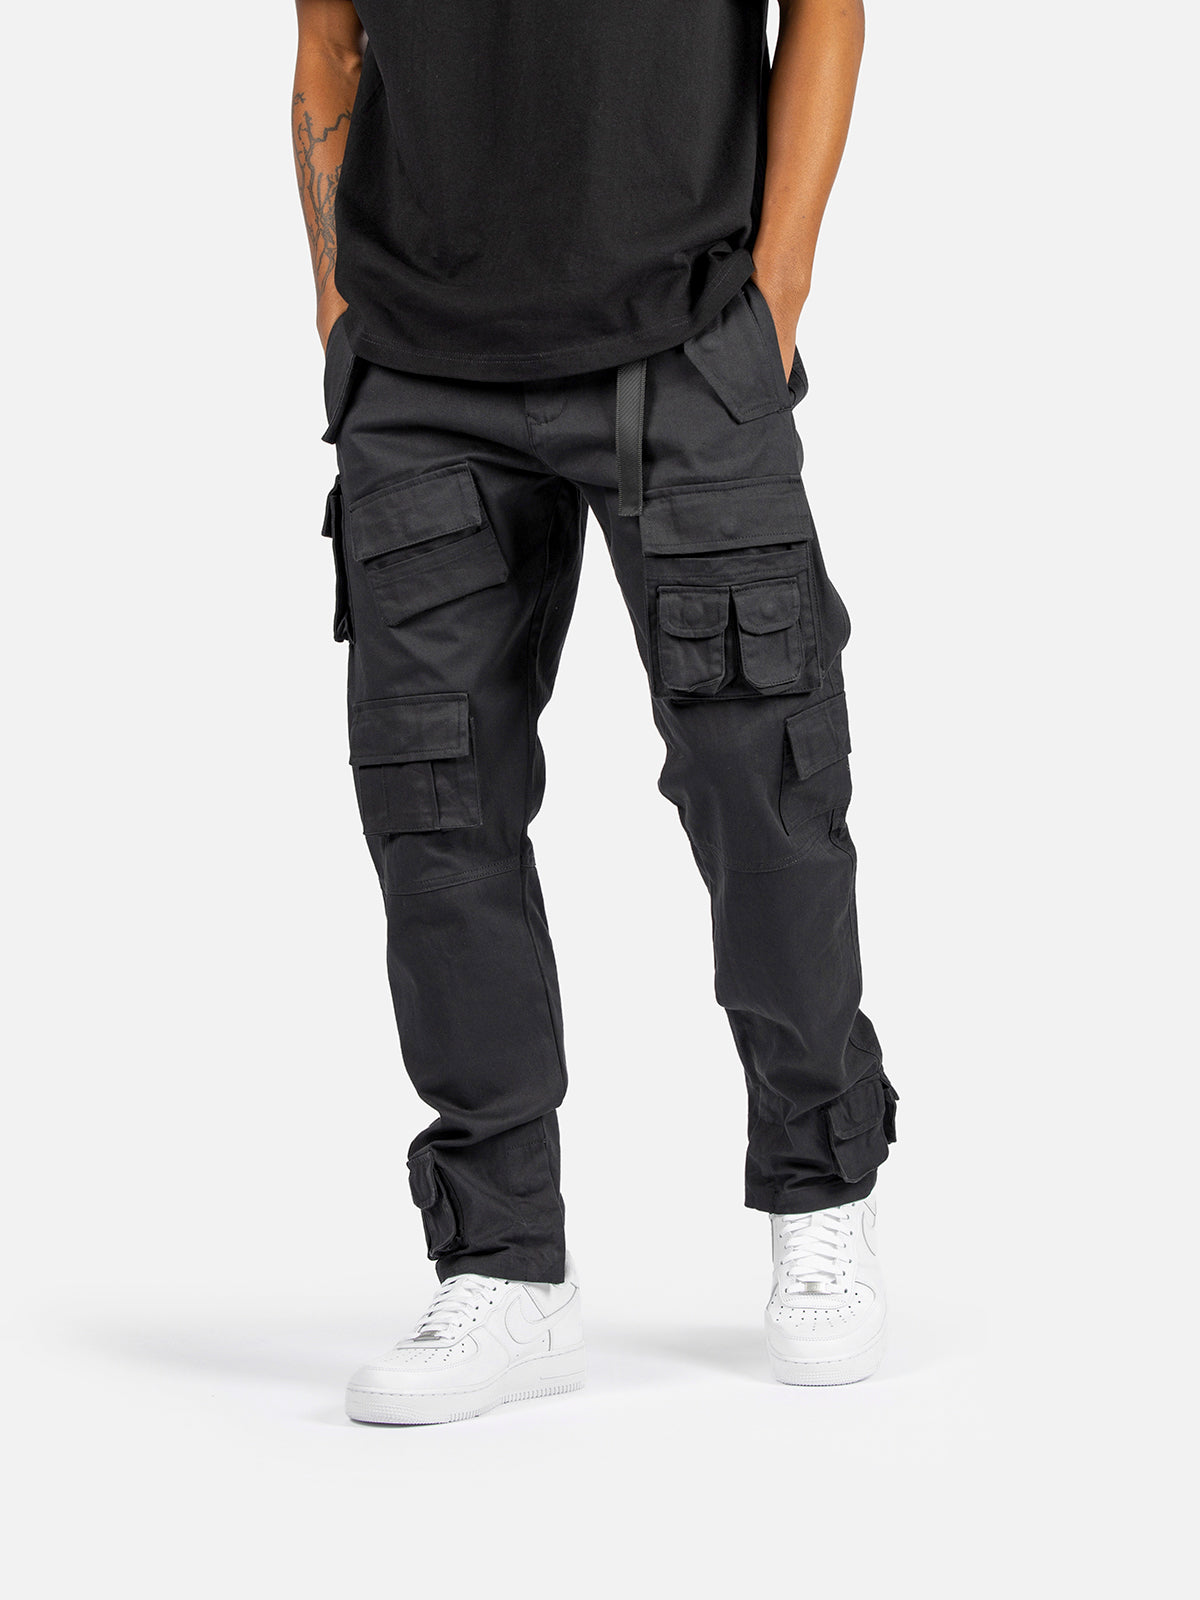 N1 Cargo Pants - Black | Blacktailor – BLACKTAILOR